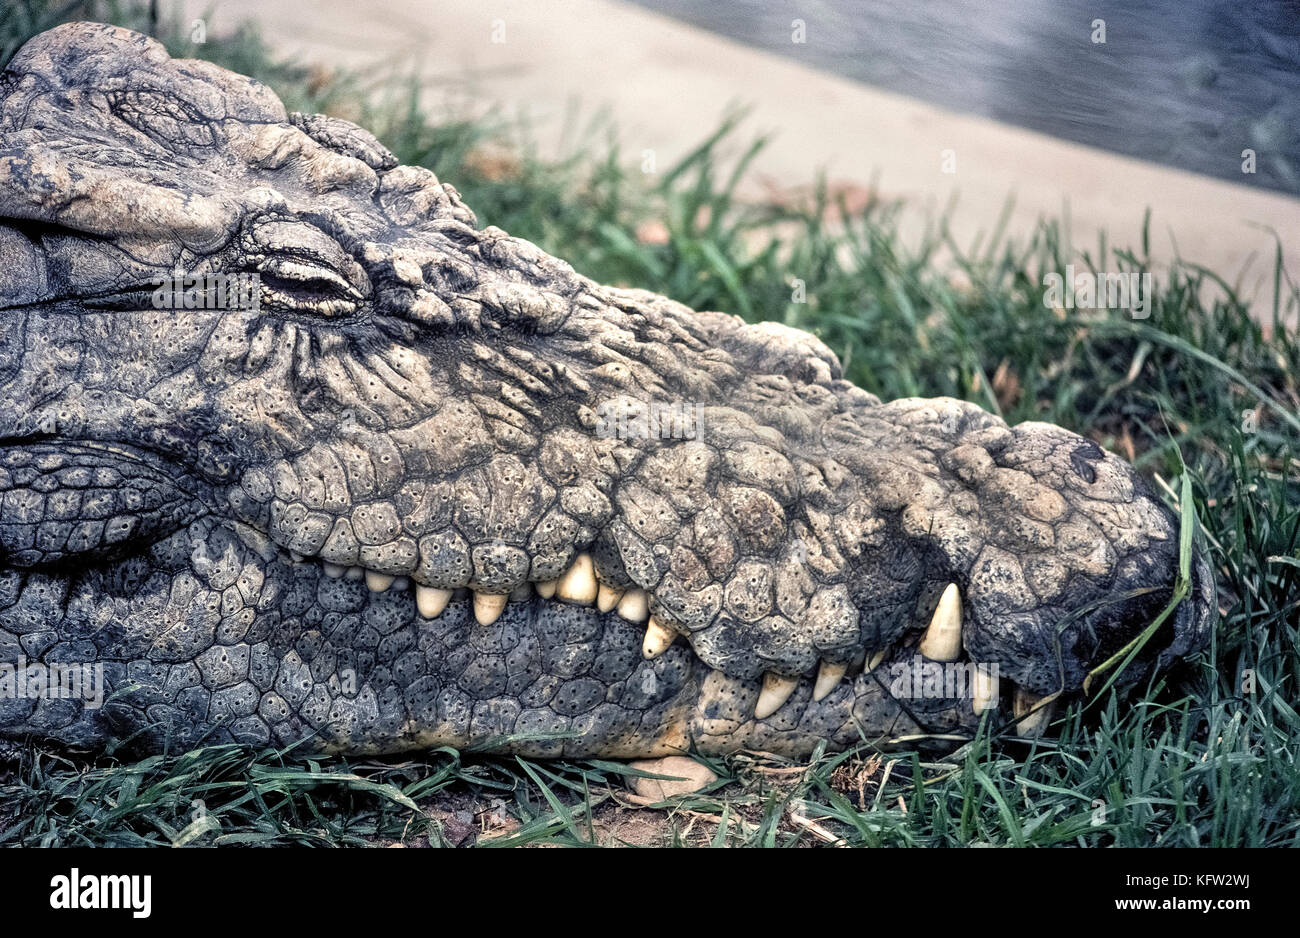 Eine Nahaufnahme der Kopf eines alten Nilkrokodil (Crocodylus niloticus) Zeigt den Holprigen pinholed Haut auf seinem Gesicht. Obwohl versteckt vor der rauen Rückseiten und glatte Bäuche der Krokodile für exotische Produkte aus Leder gegerbt, des Reptils Kopf nicht gehäutet werden. Fotografiert in einem Wildlife in Südafrika, wo die Besucher diese fleischfressende Nil crocs sicher kann ohne angegriffen zu beobachten, zu erhalten. Stockfoto